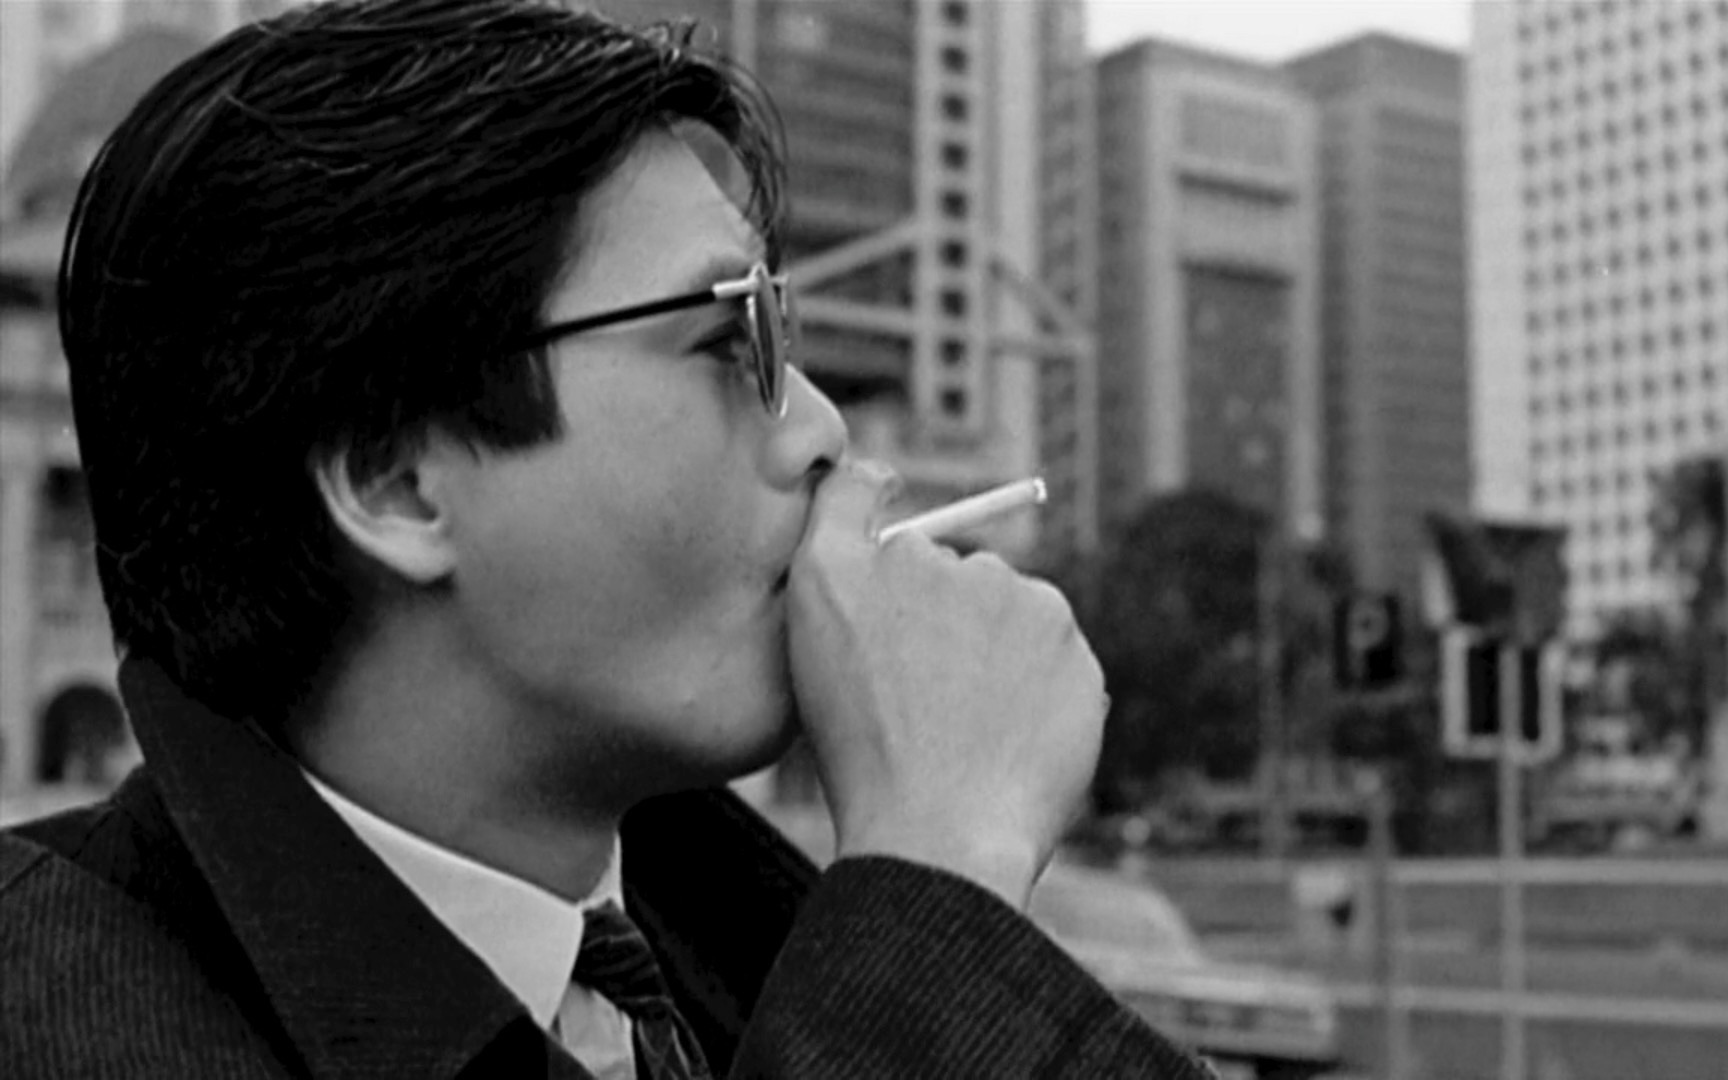 我眼中抽烟最帅的男人:bgm-time&肯定有一个镜头让你直呼经典